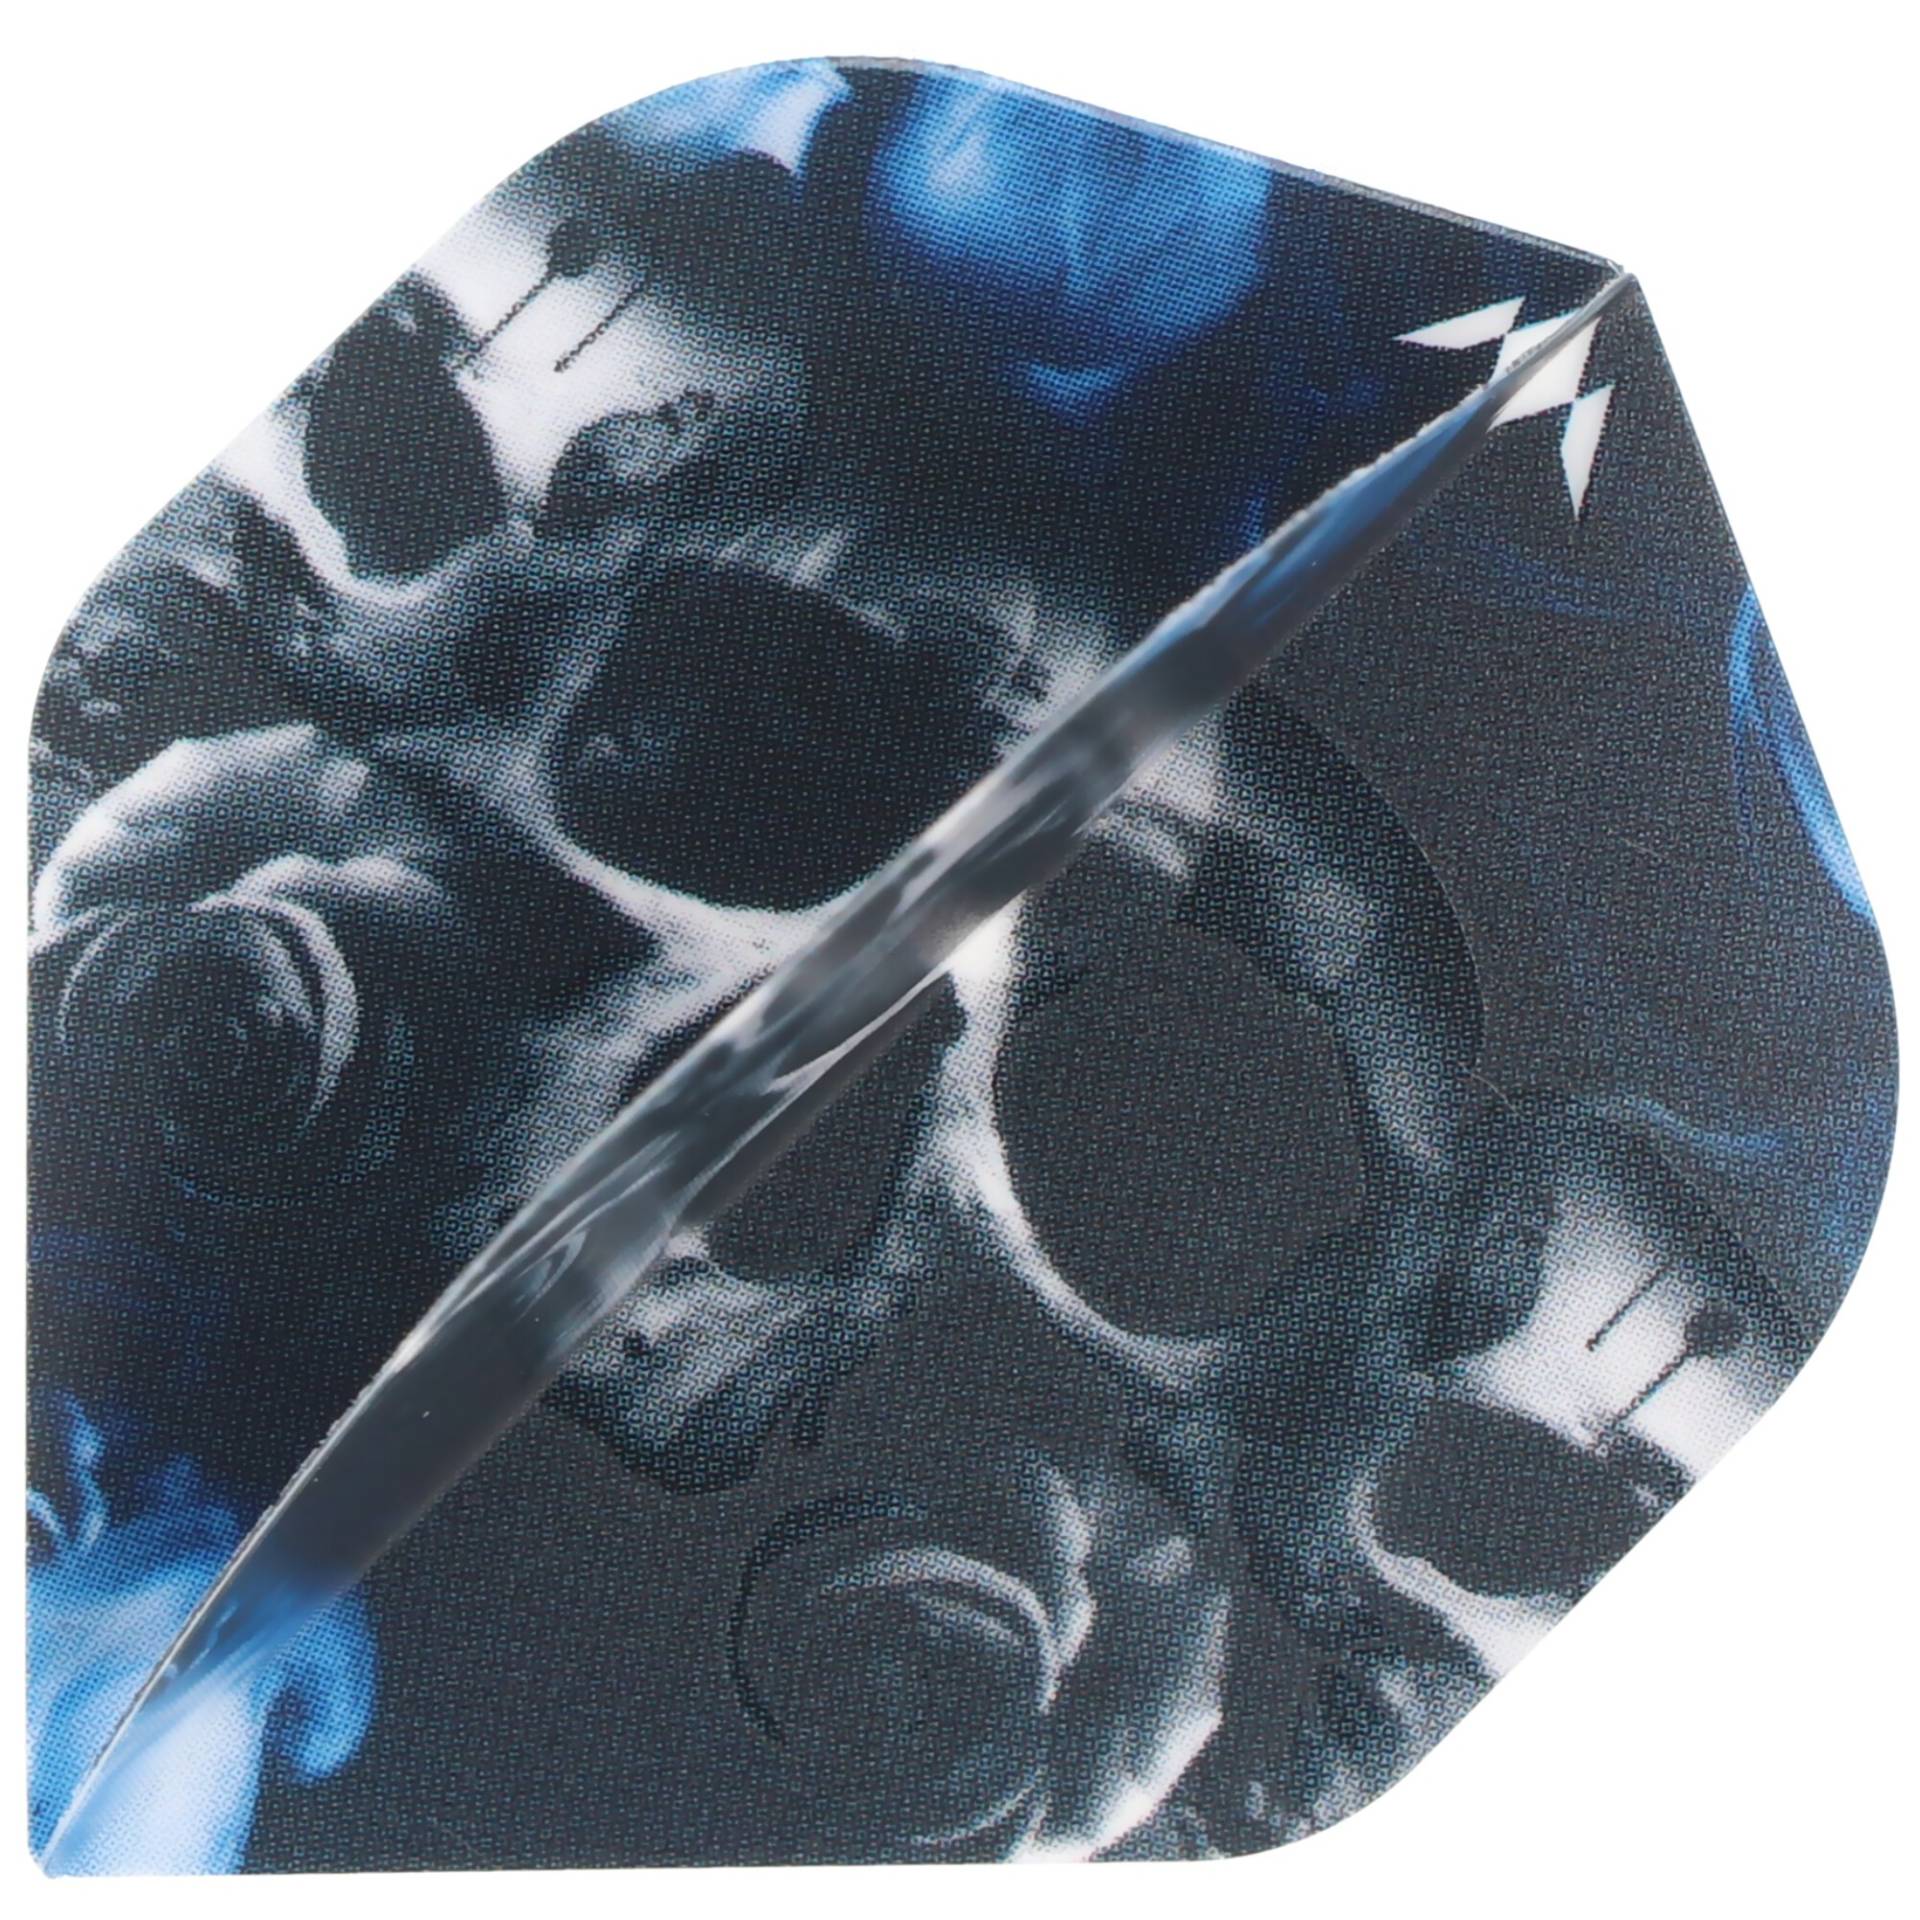 Totenkopf Dart Flights Skull, blau schwarz, No2, 3 Flights von Mission